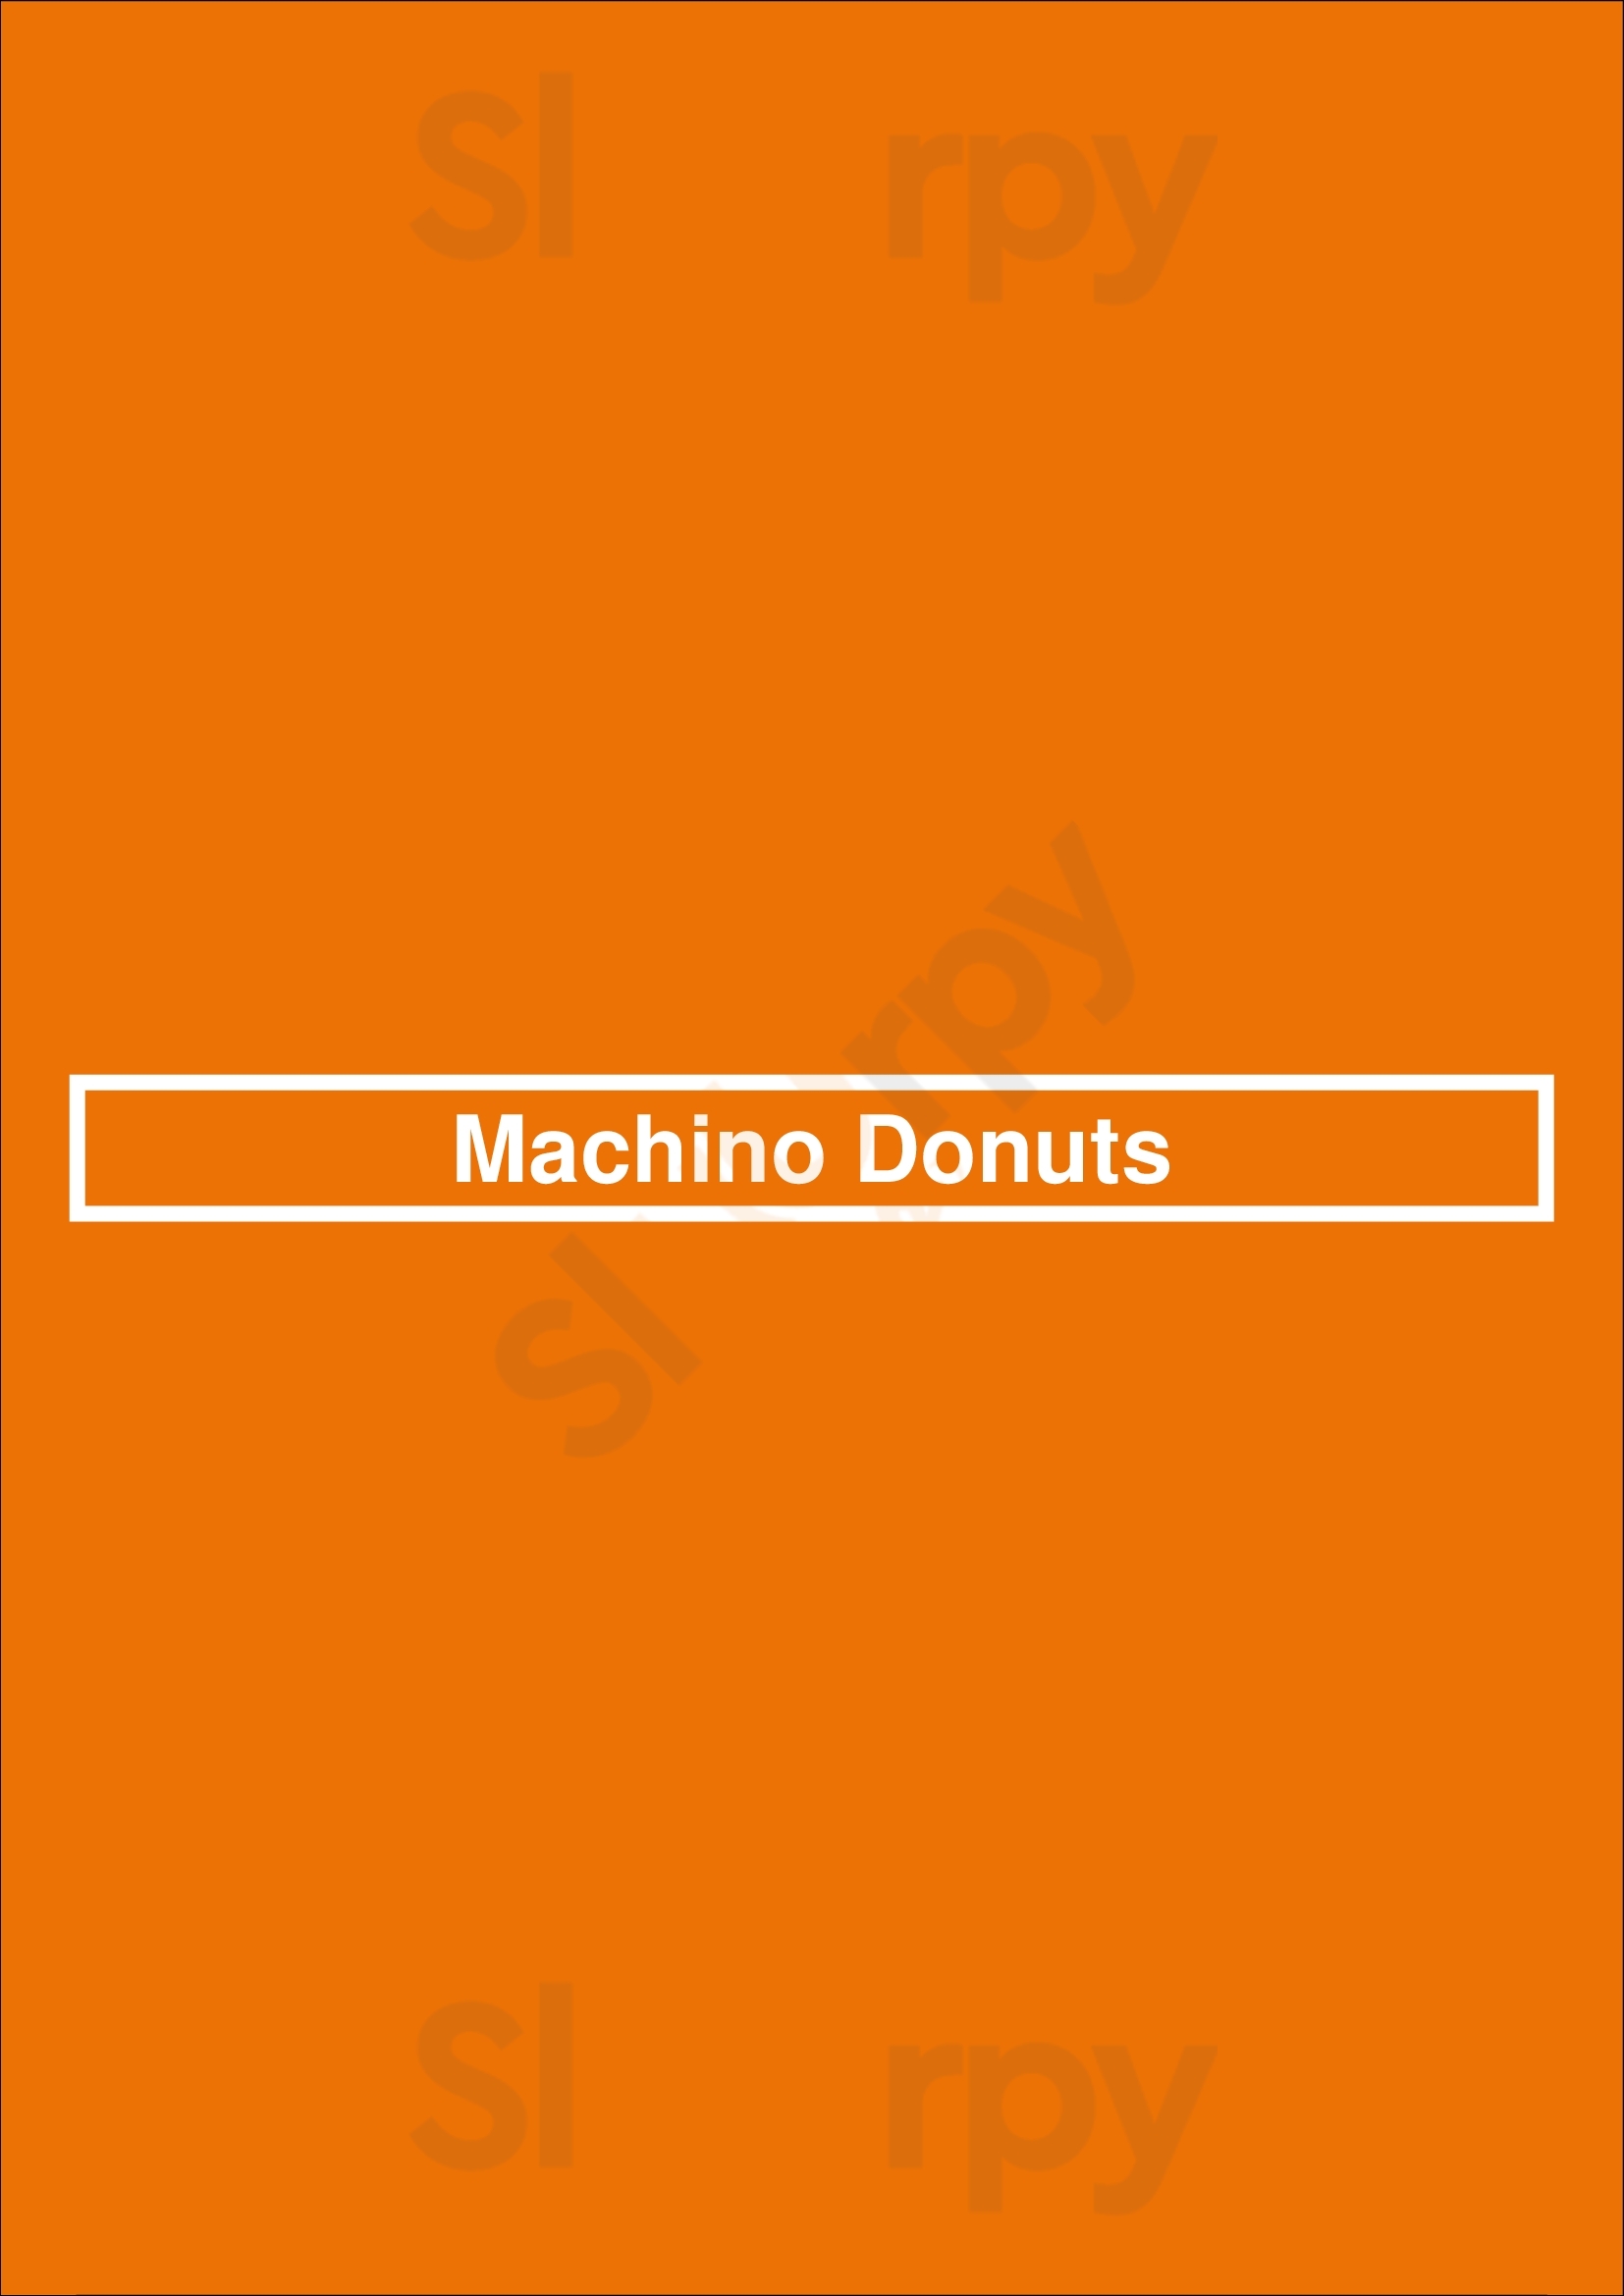 Machino Donuts Toronto Menu - 1